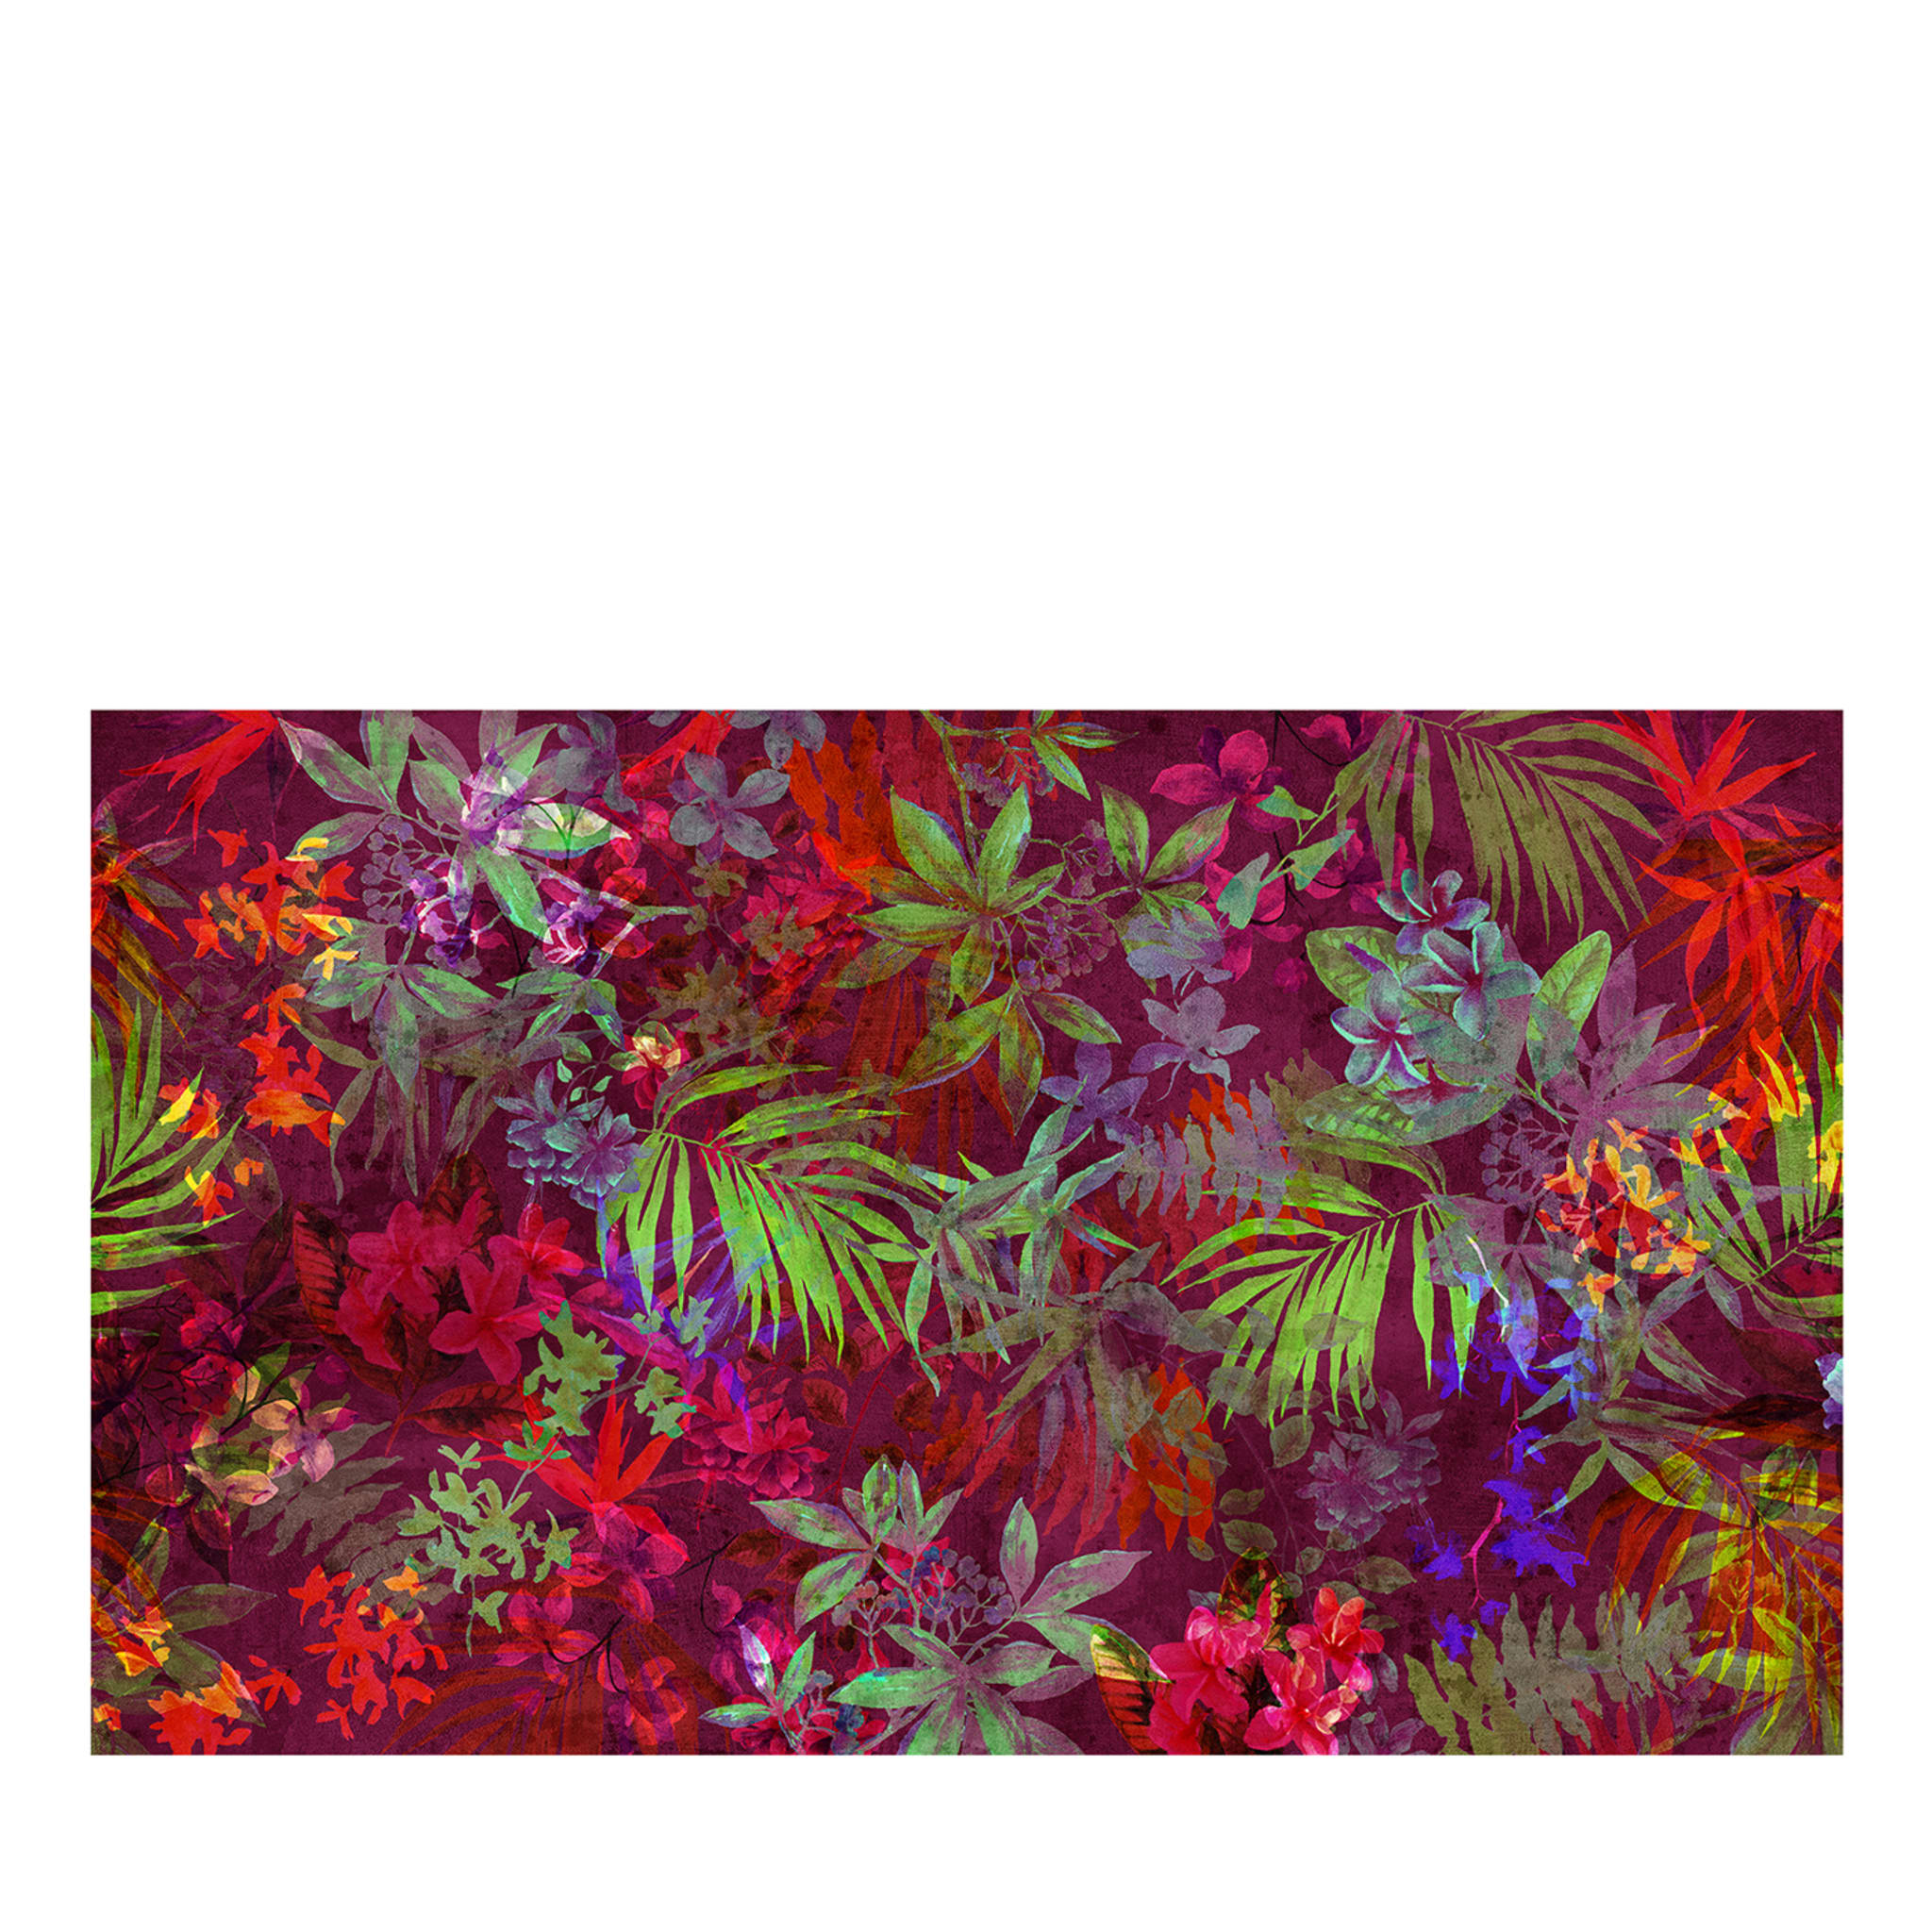 La forêt tropicale par Alice carmen Goga wallpaper#1 - Vue principale